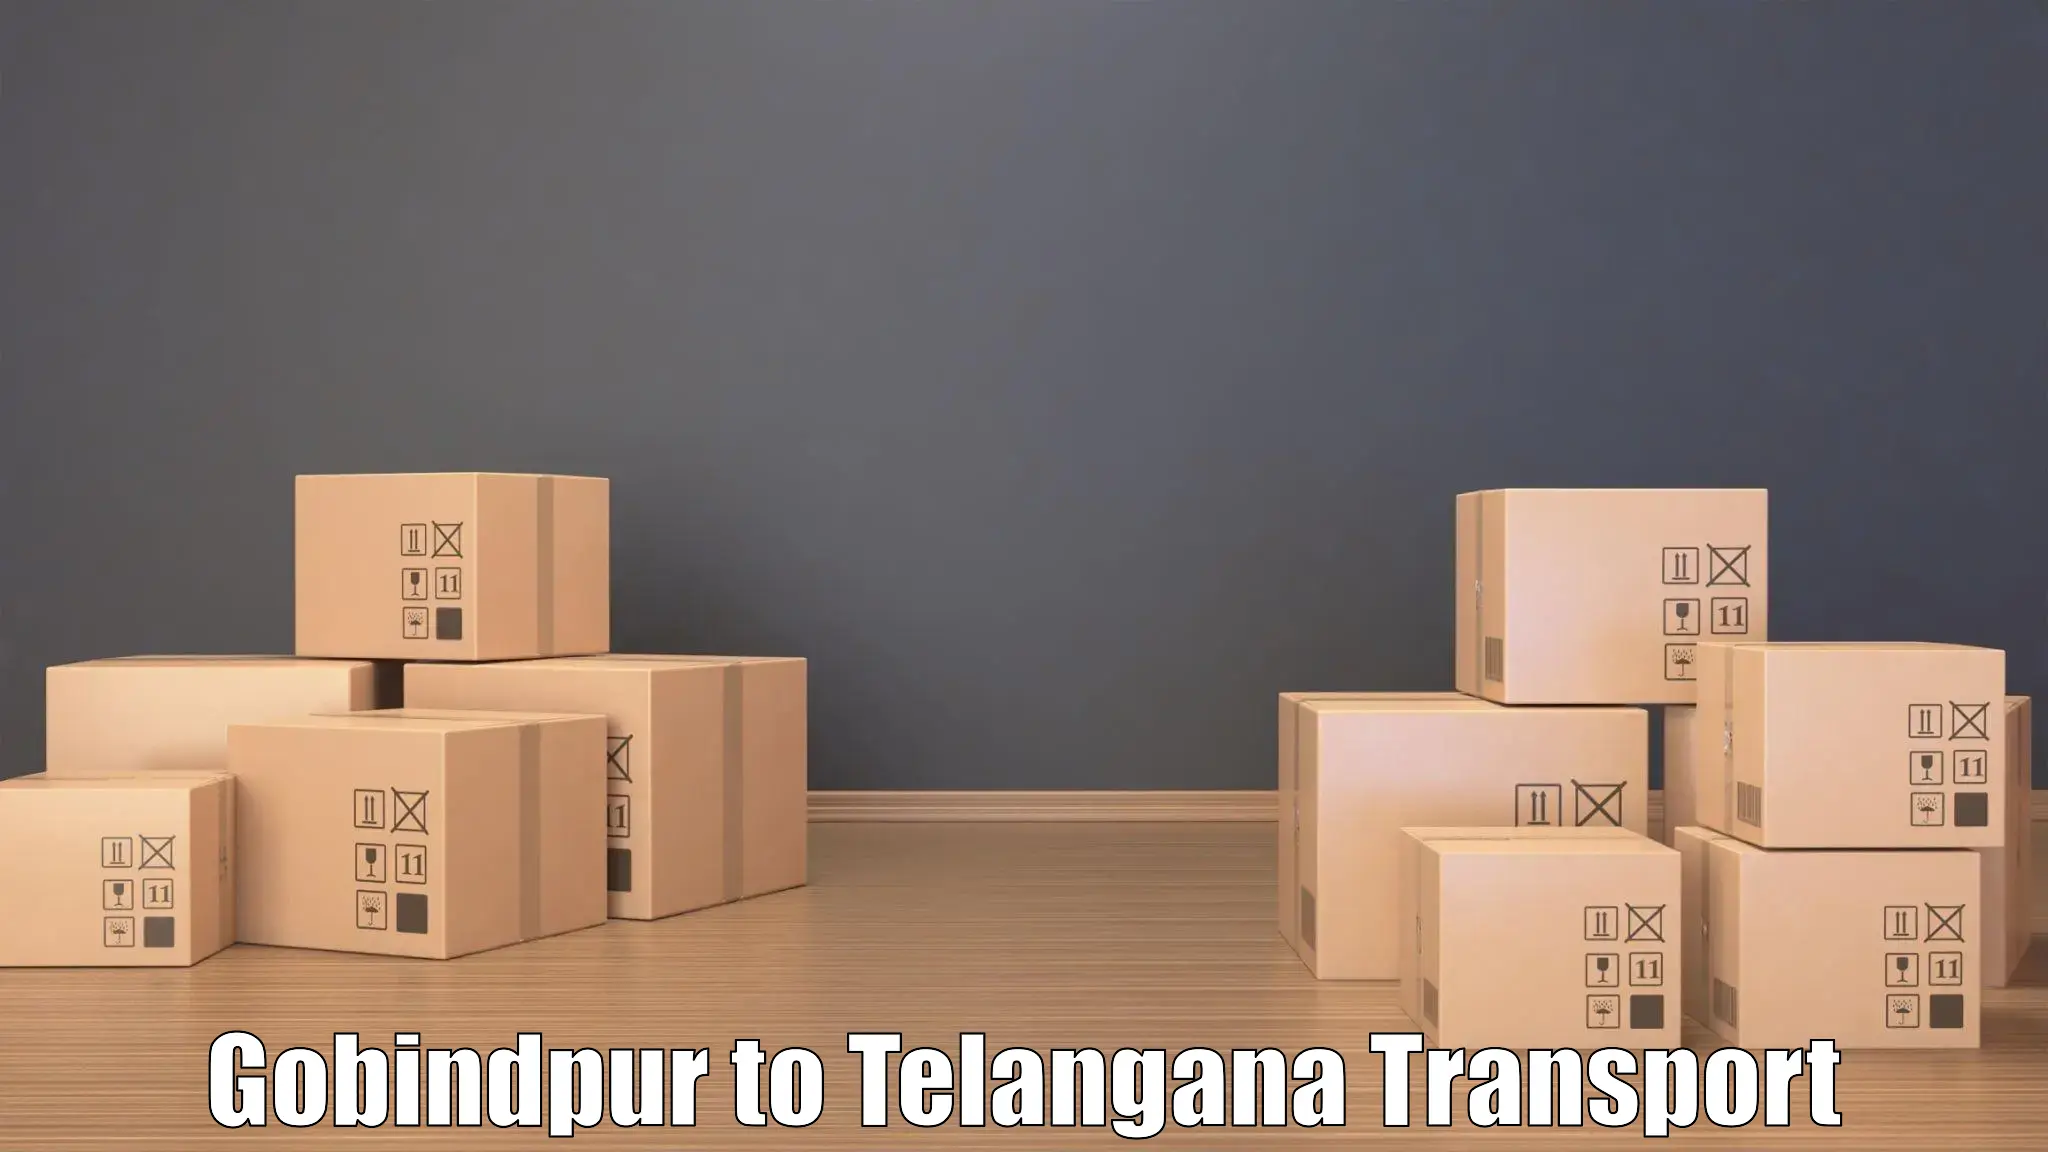 Transportation solution services in Gobindpur to Mahabubnagar